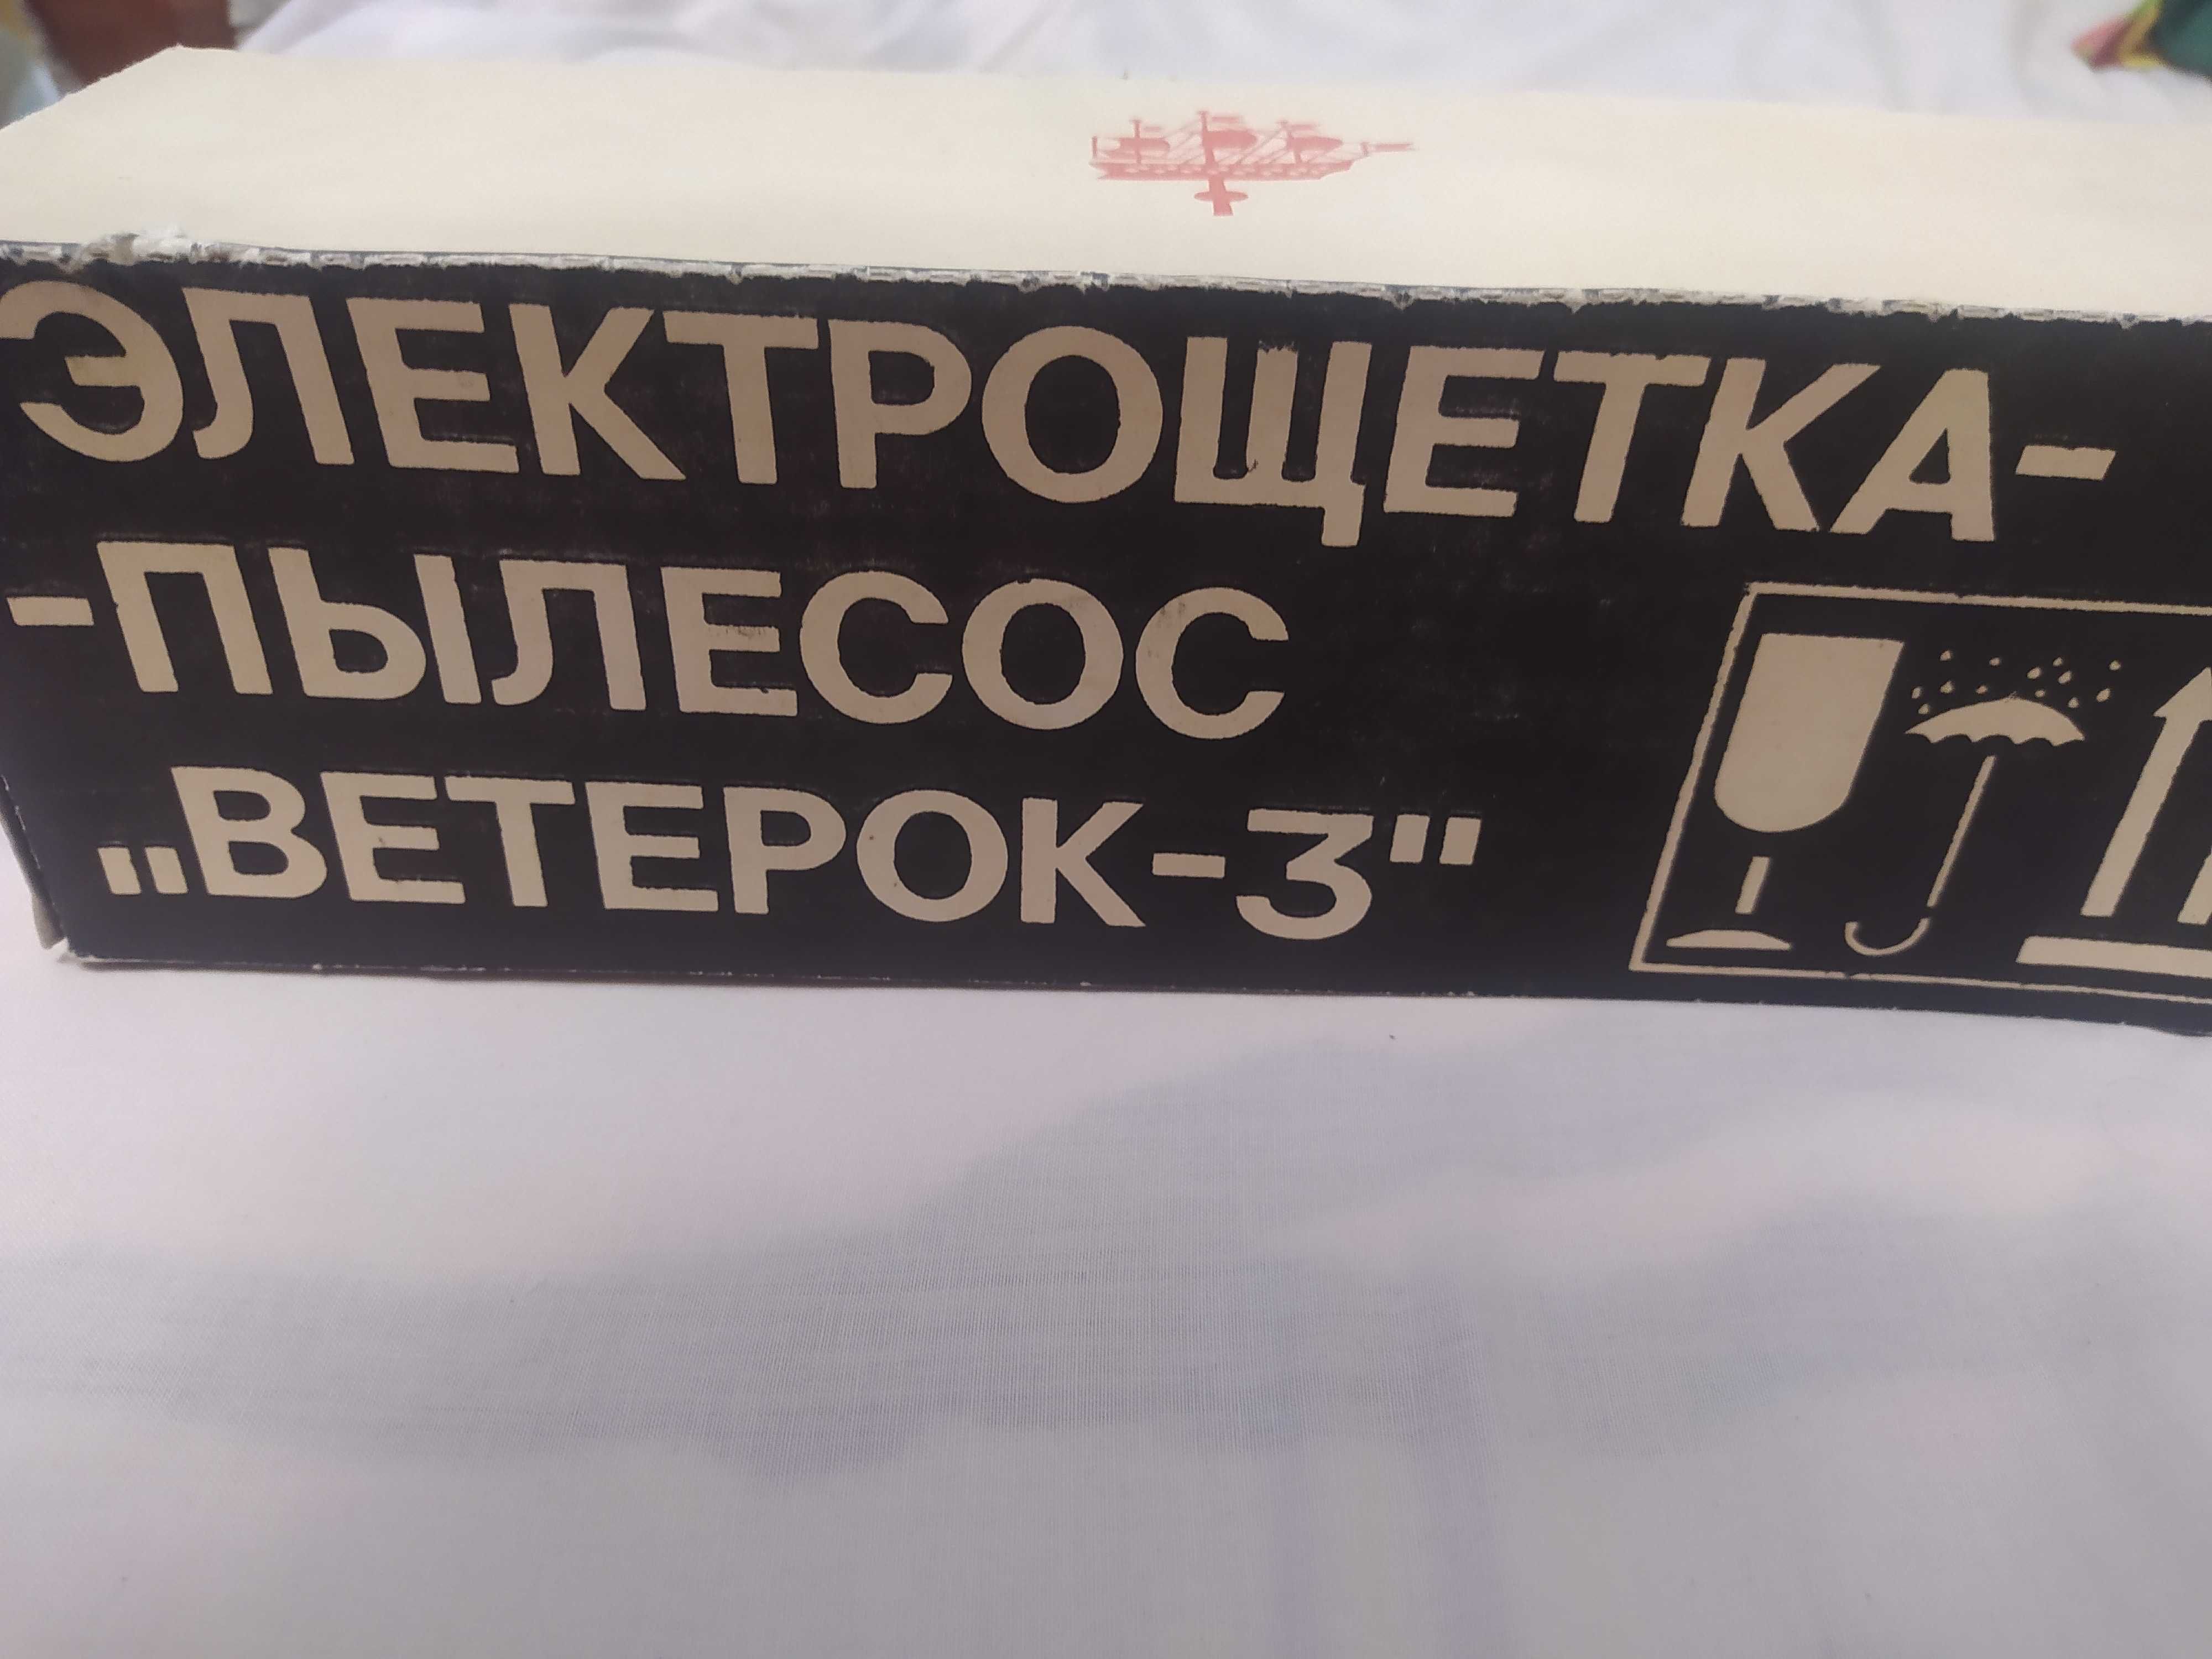 Электрощётка - пылесос "Ветерок-3"